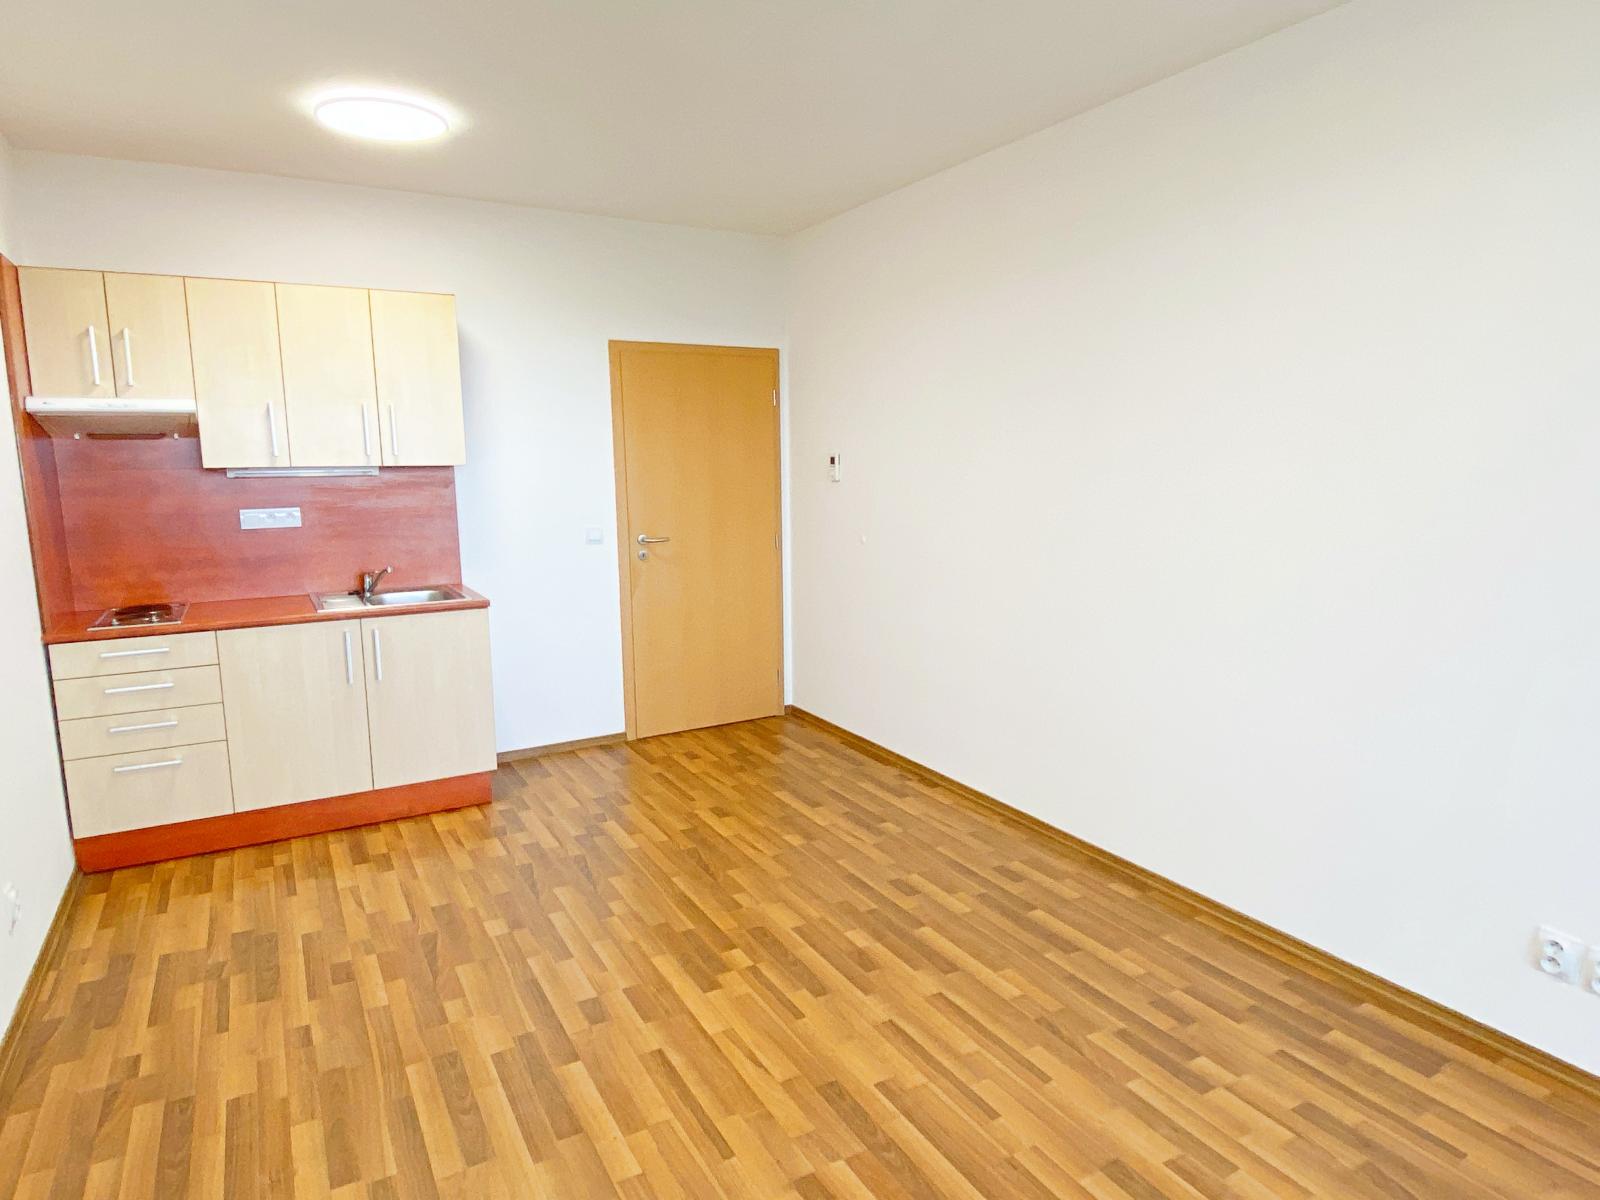 Pronájem bytu 1+kk, 28,38 m2 + terasa 6,38 m2 + sklep 3,2 m2 + parkovací stání v Olomouci na ulici T